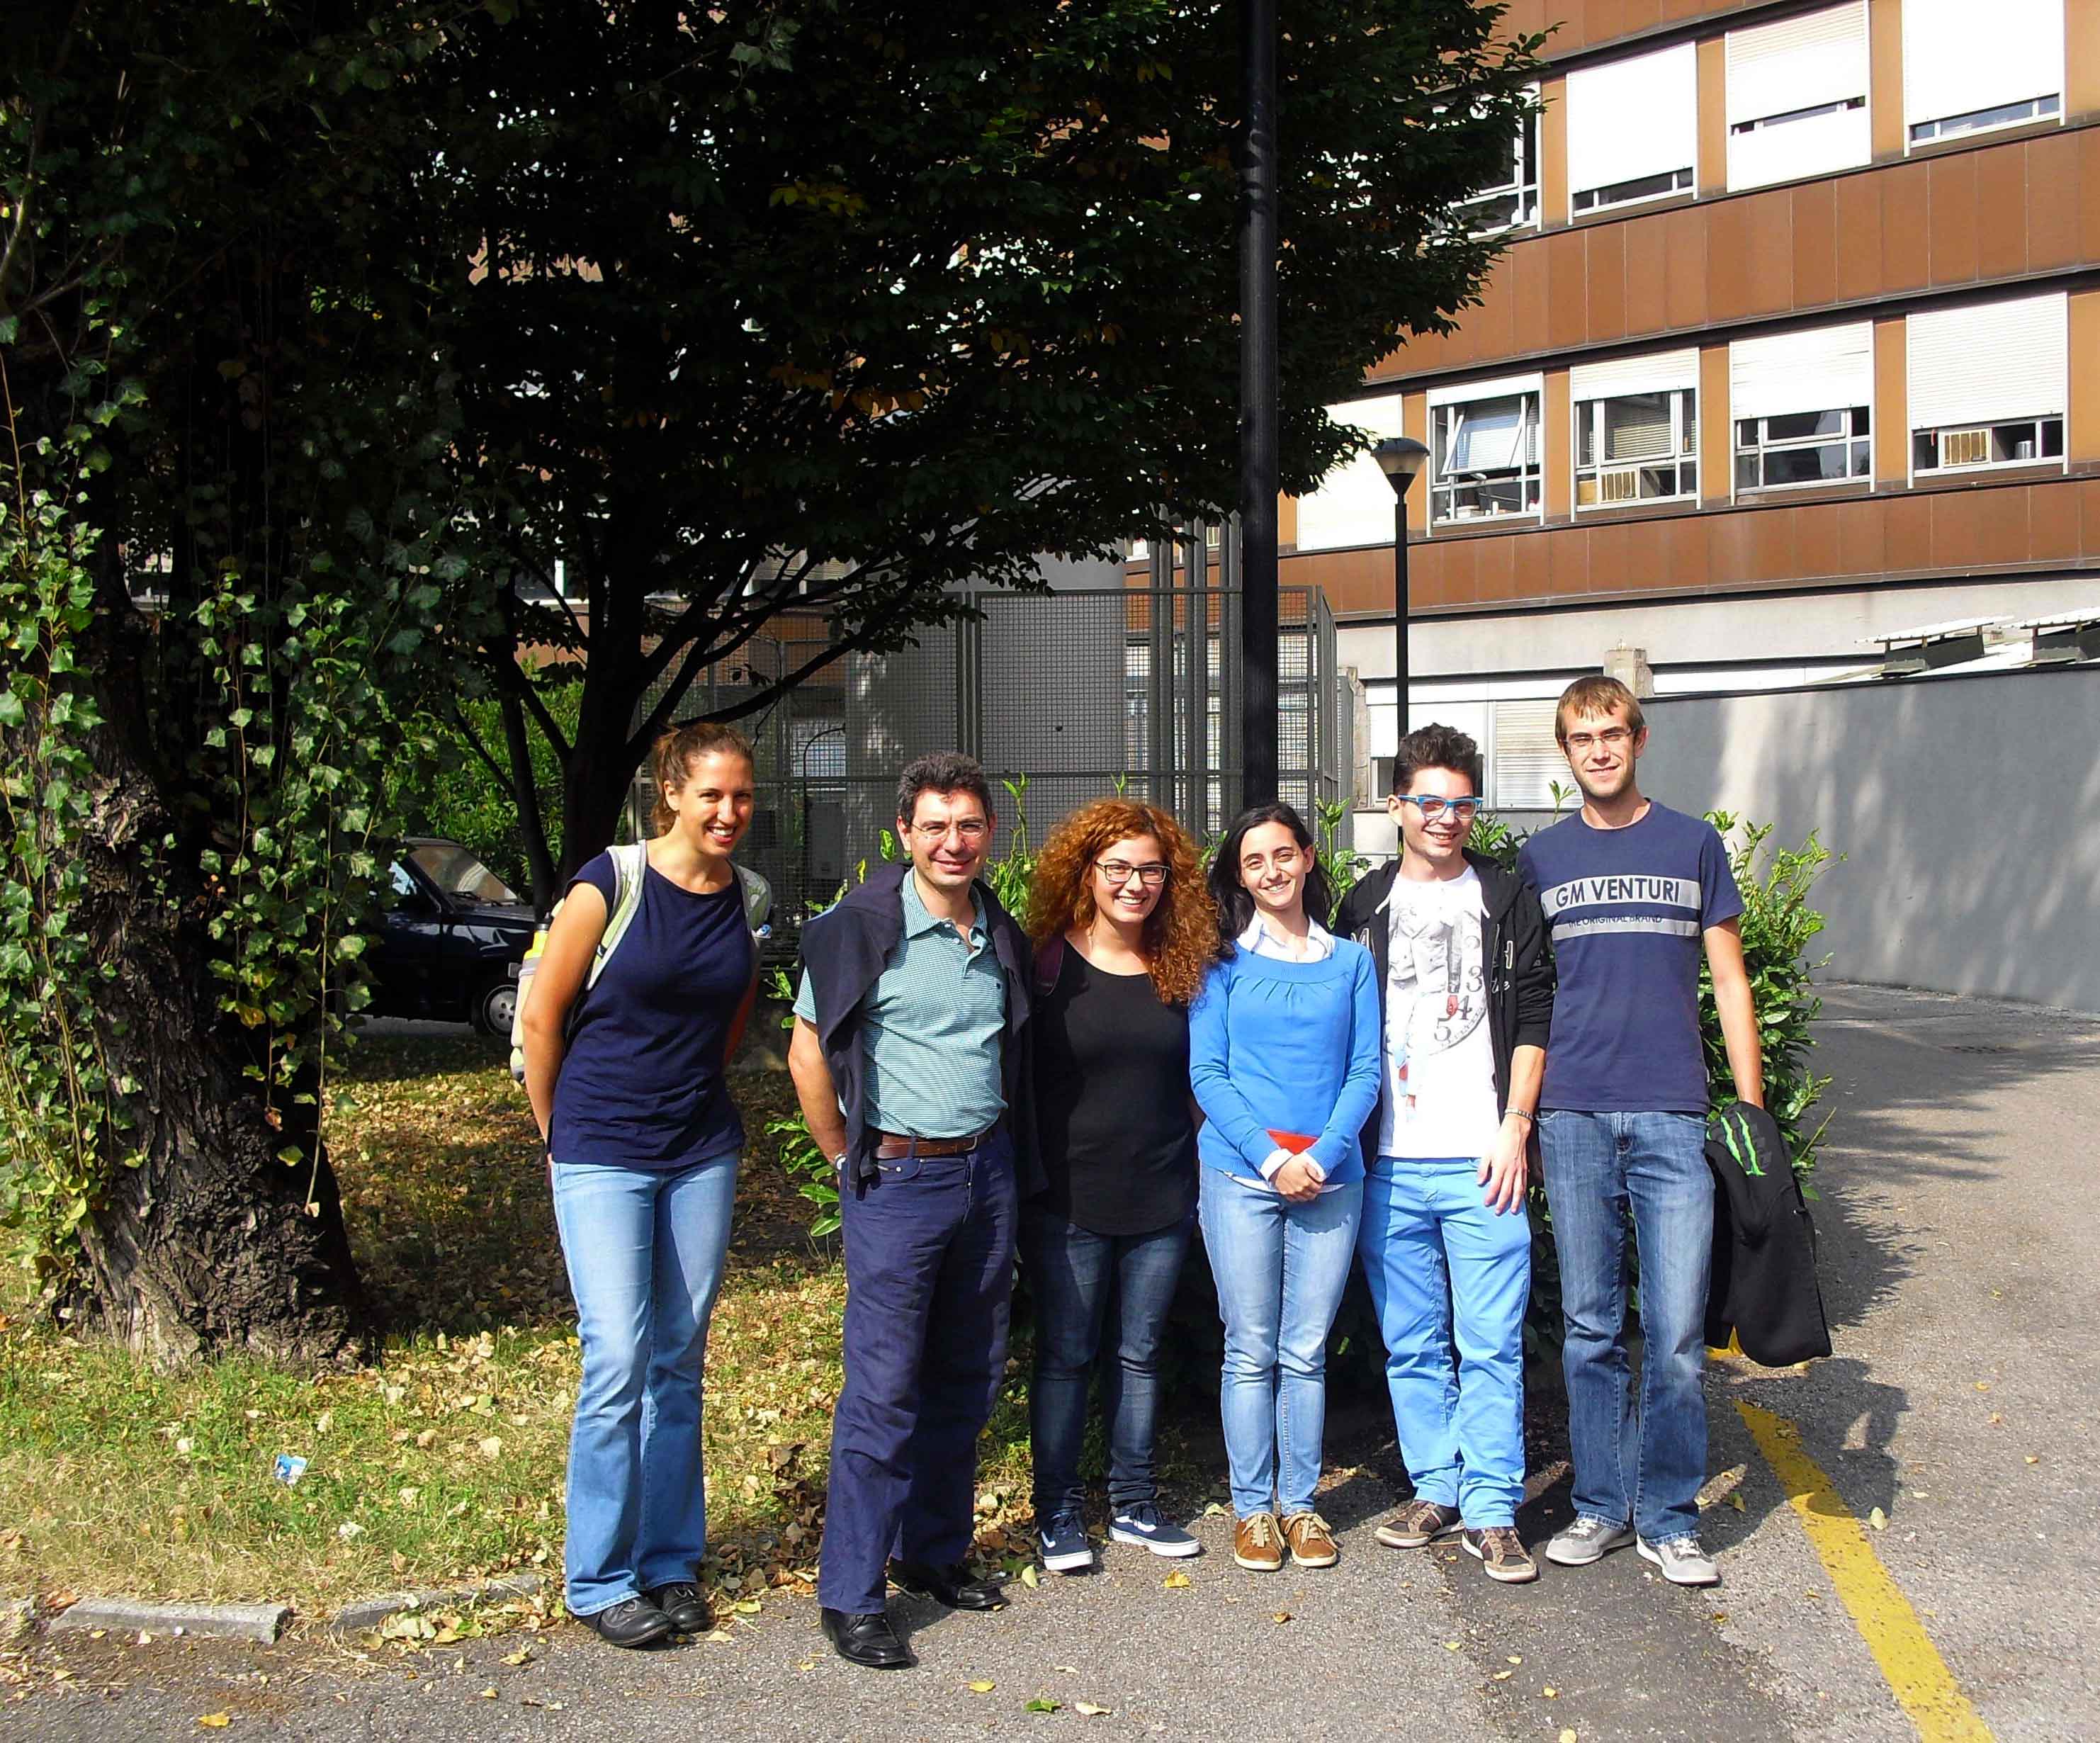 From left to right: Stéphanie Valleau, Michele Ceotto, Giovanna Bruno, Chiara Aieta, 
						Giovanni Di Liberto and Roberto Bellani.